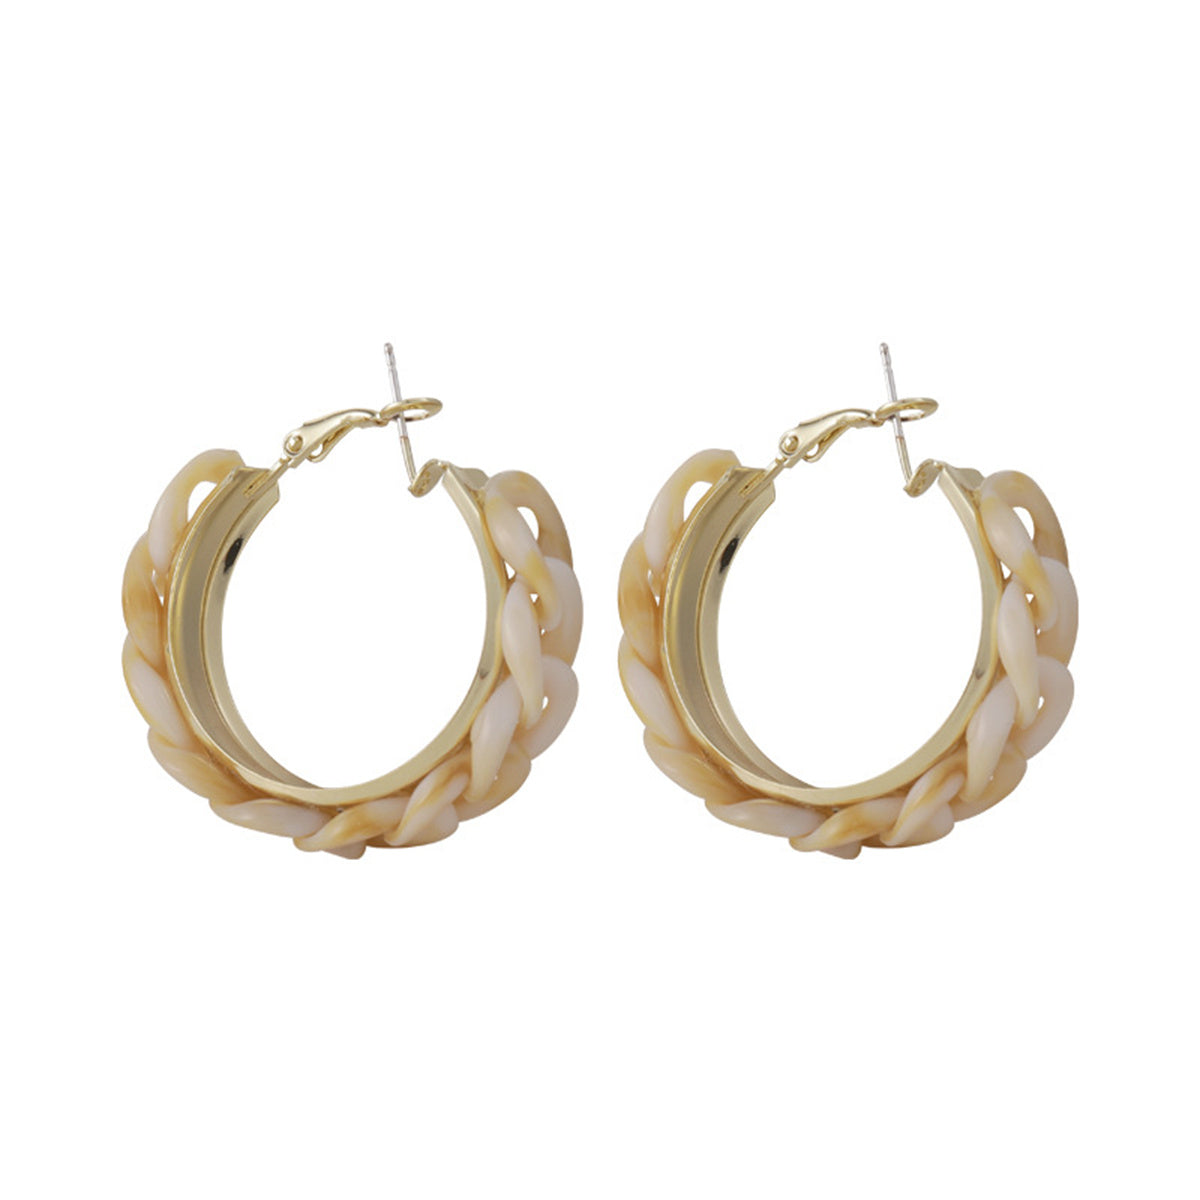 Beige Resin & 18K Gold-Plated Chain Hoop Earrings